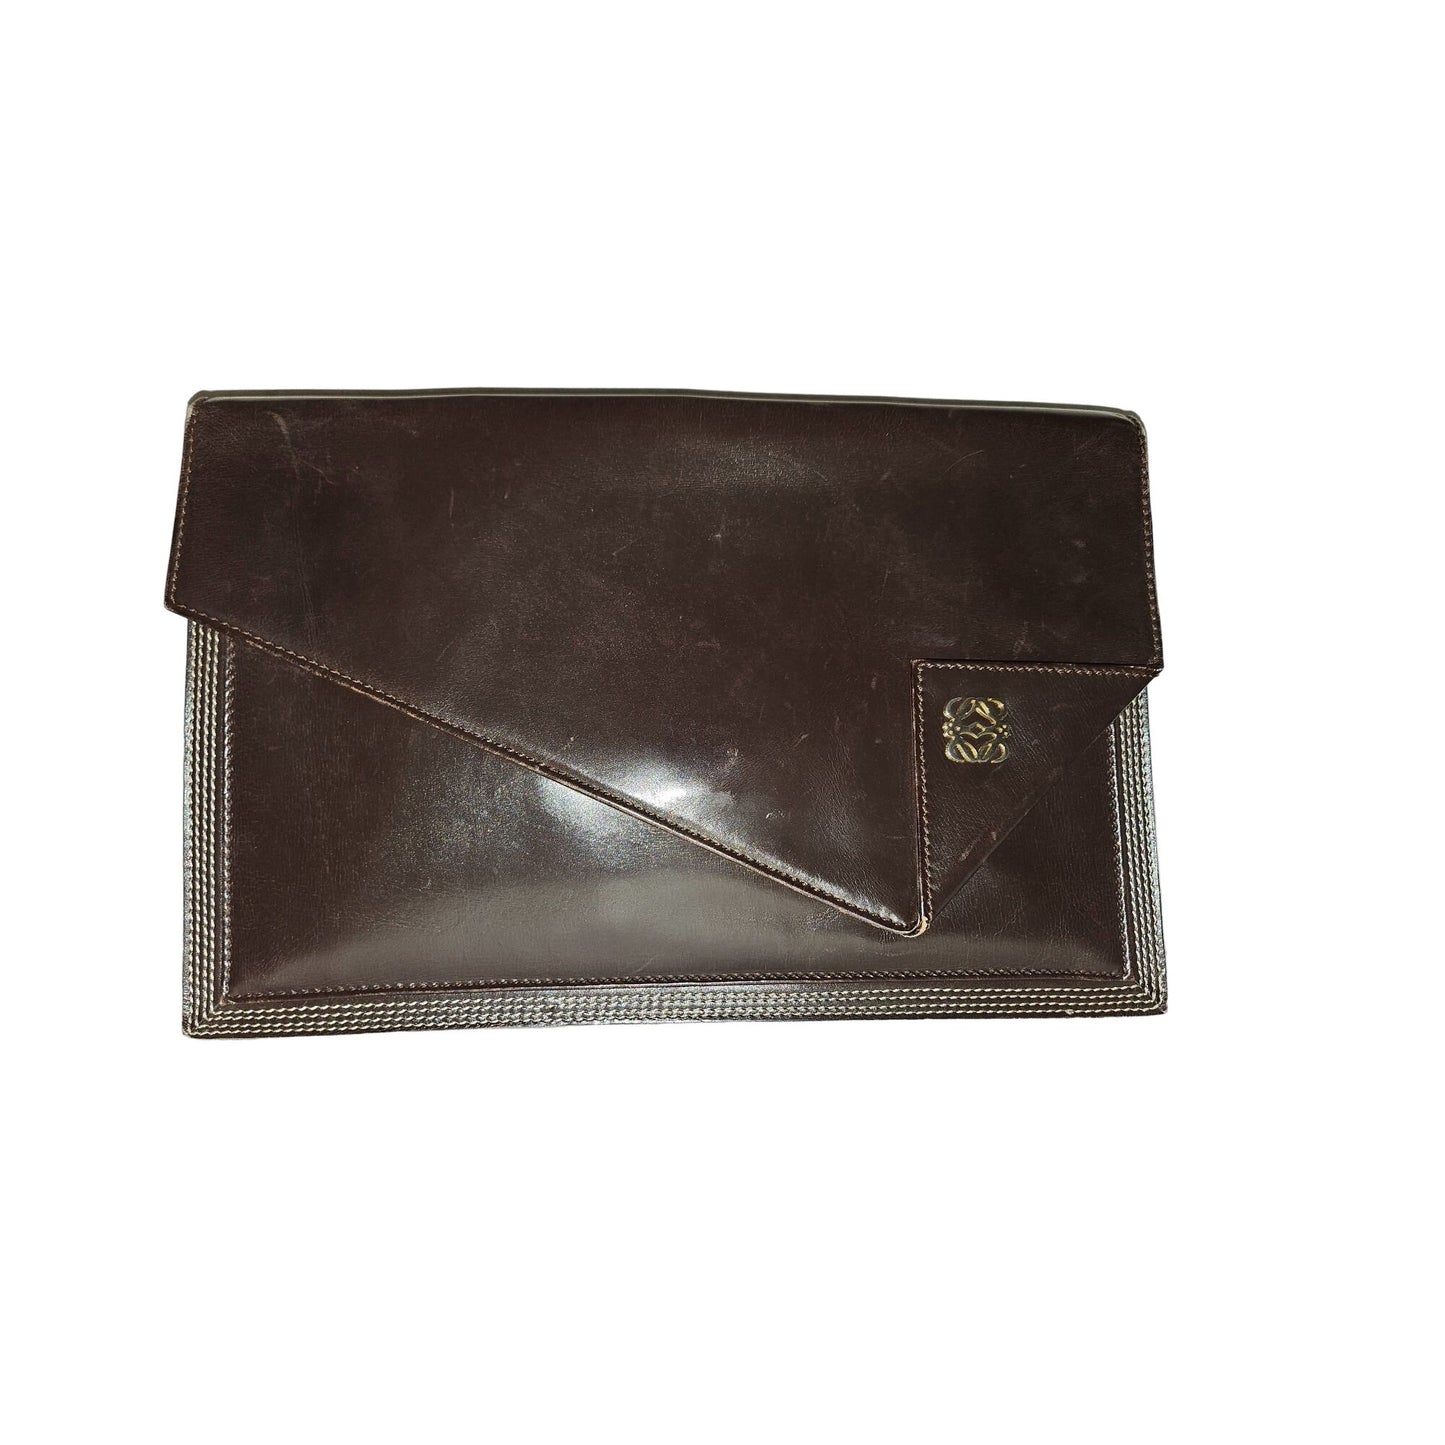 Loewe mahogany leather asymmetrical XL clutch